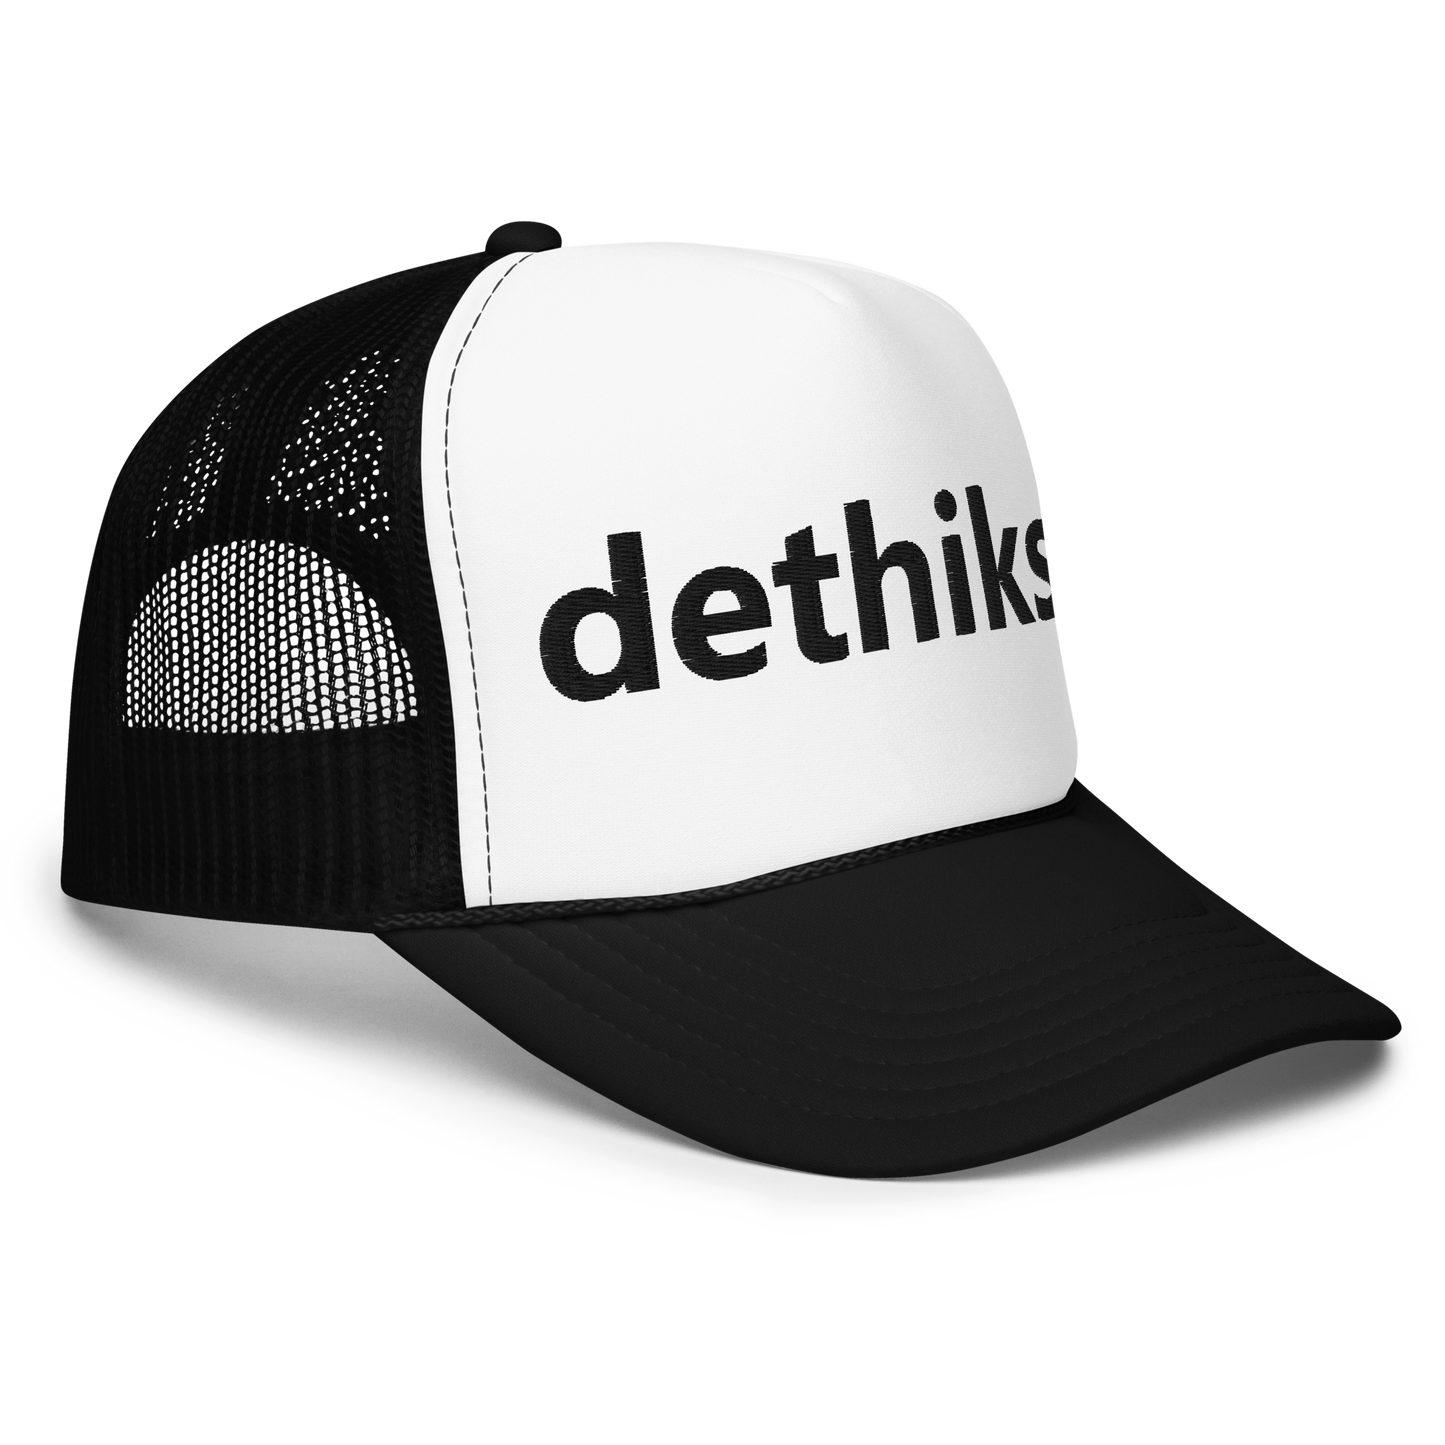 dethiks_ Foam Trucker Hat